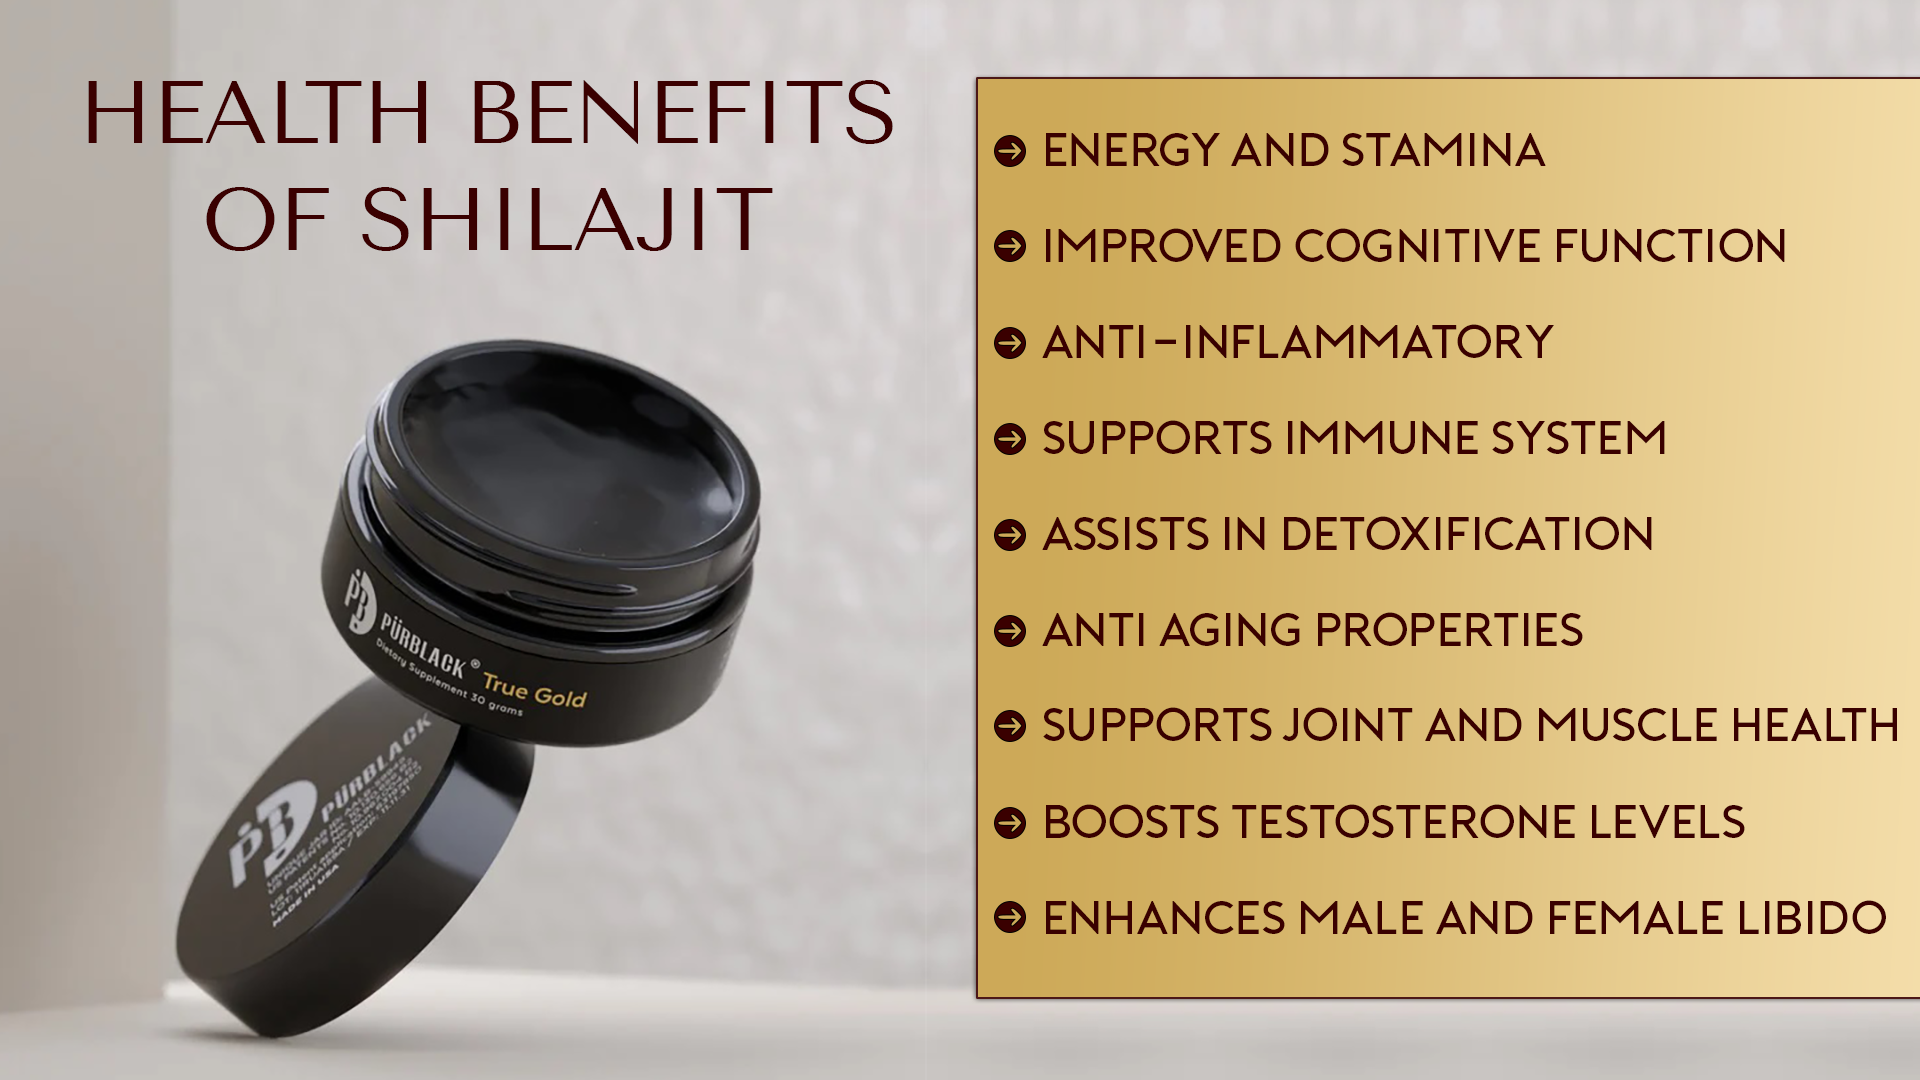 HEALTH BENEFITS OF SHILAJIT